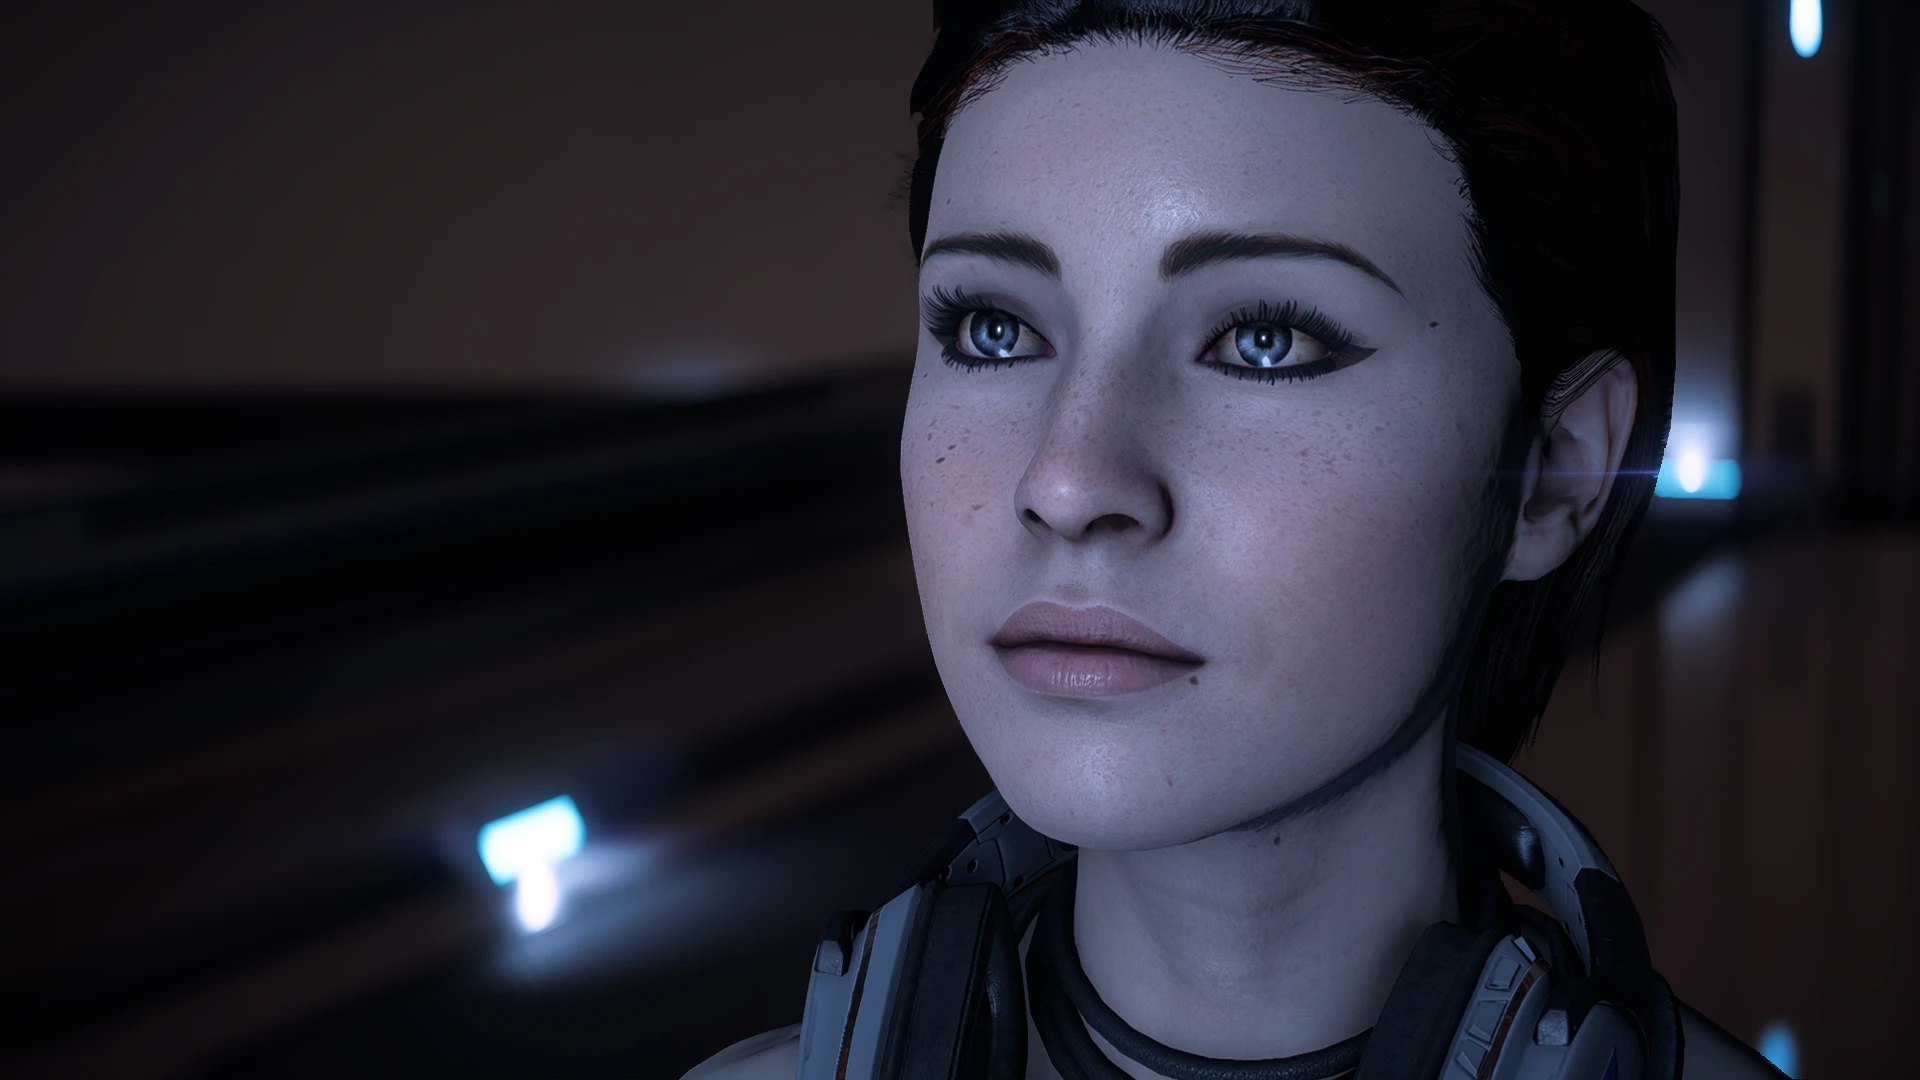 Rebel ryder. Rebel Ryder Interview. Andromeda stories. 3 D model Sara Ryder nude of Mass Effect Andromeda.